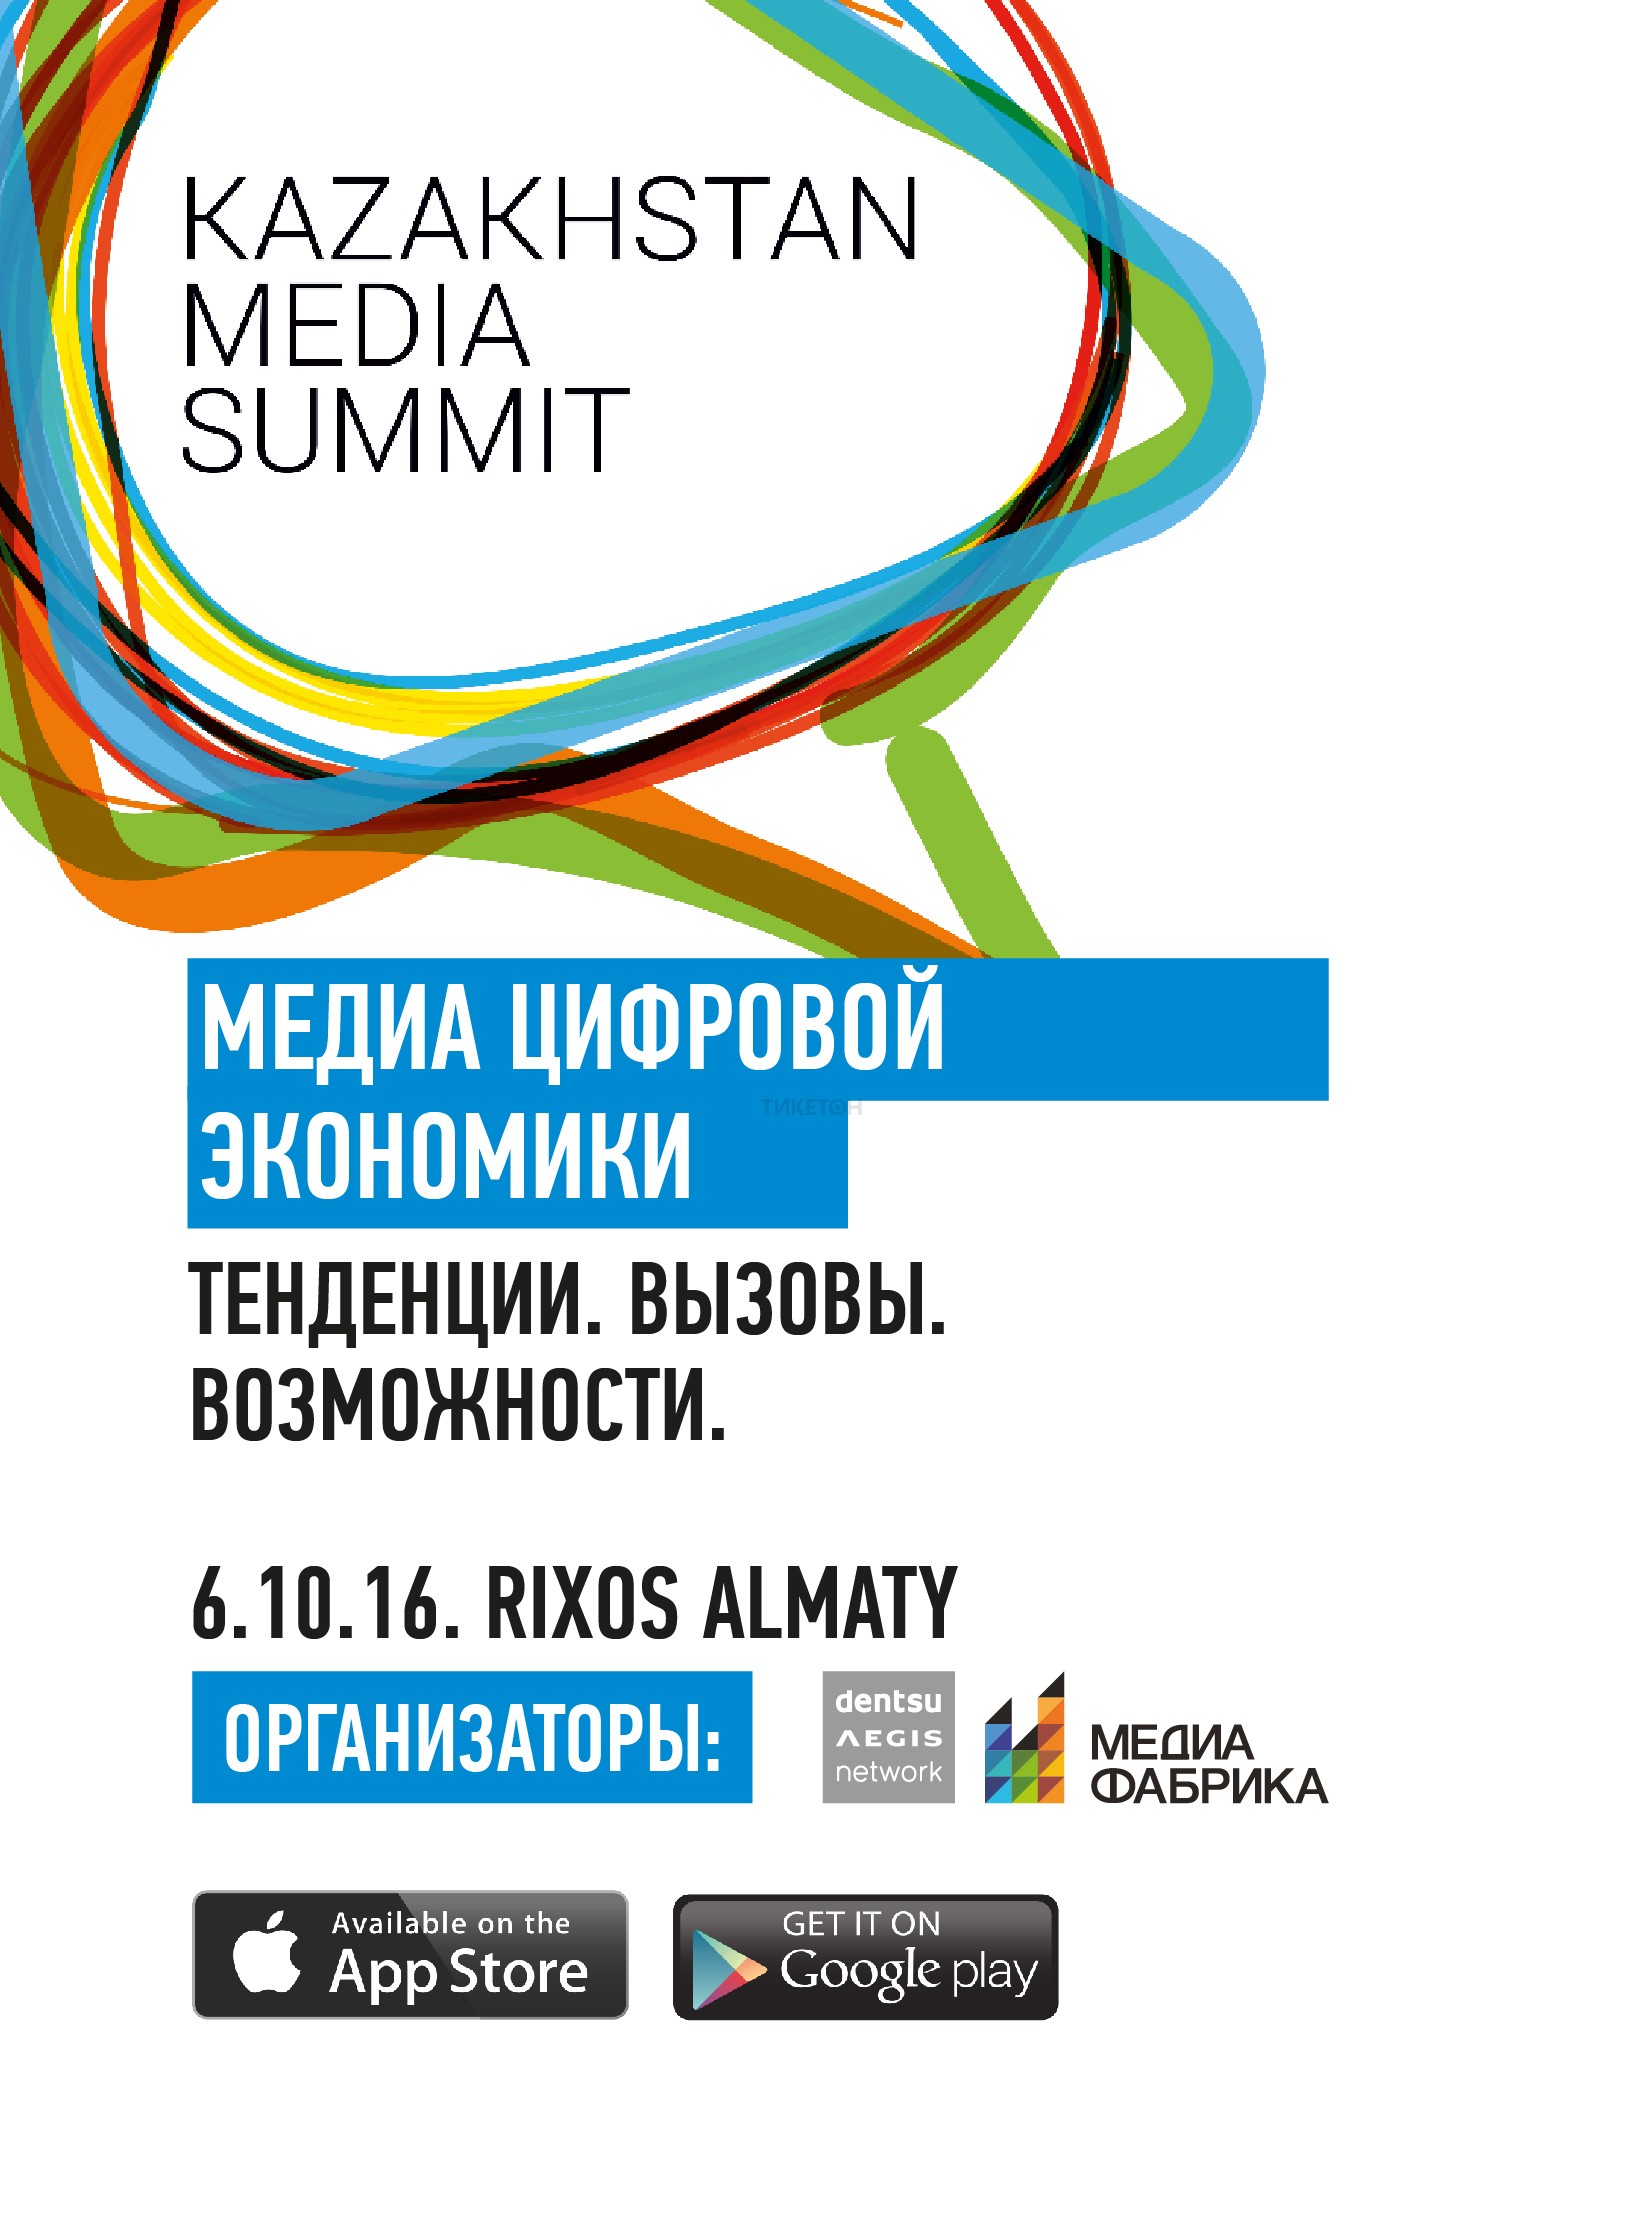 Kazakhstan Media Summit